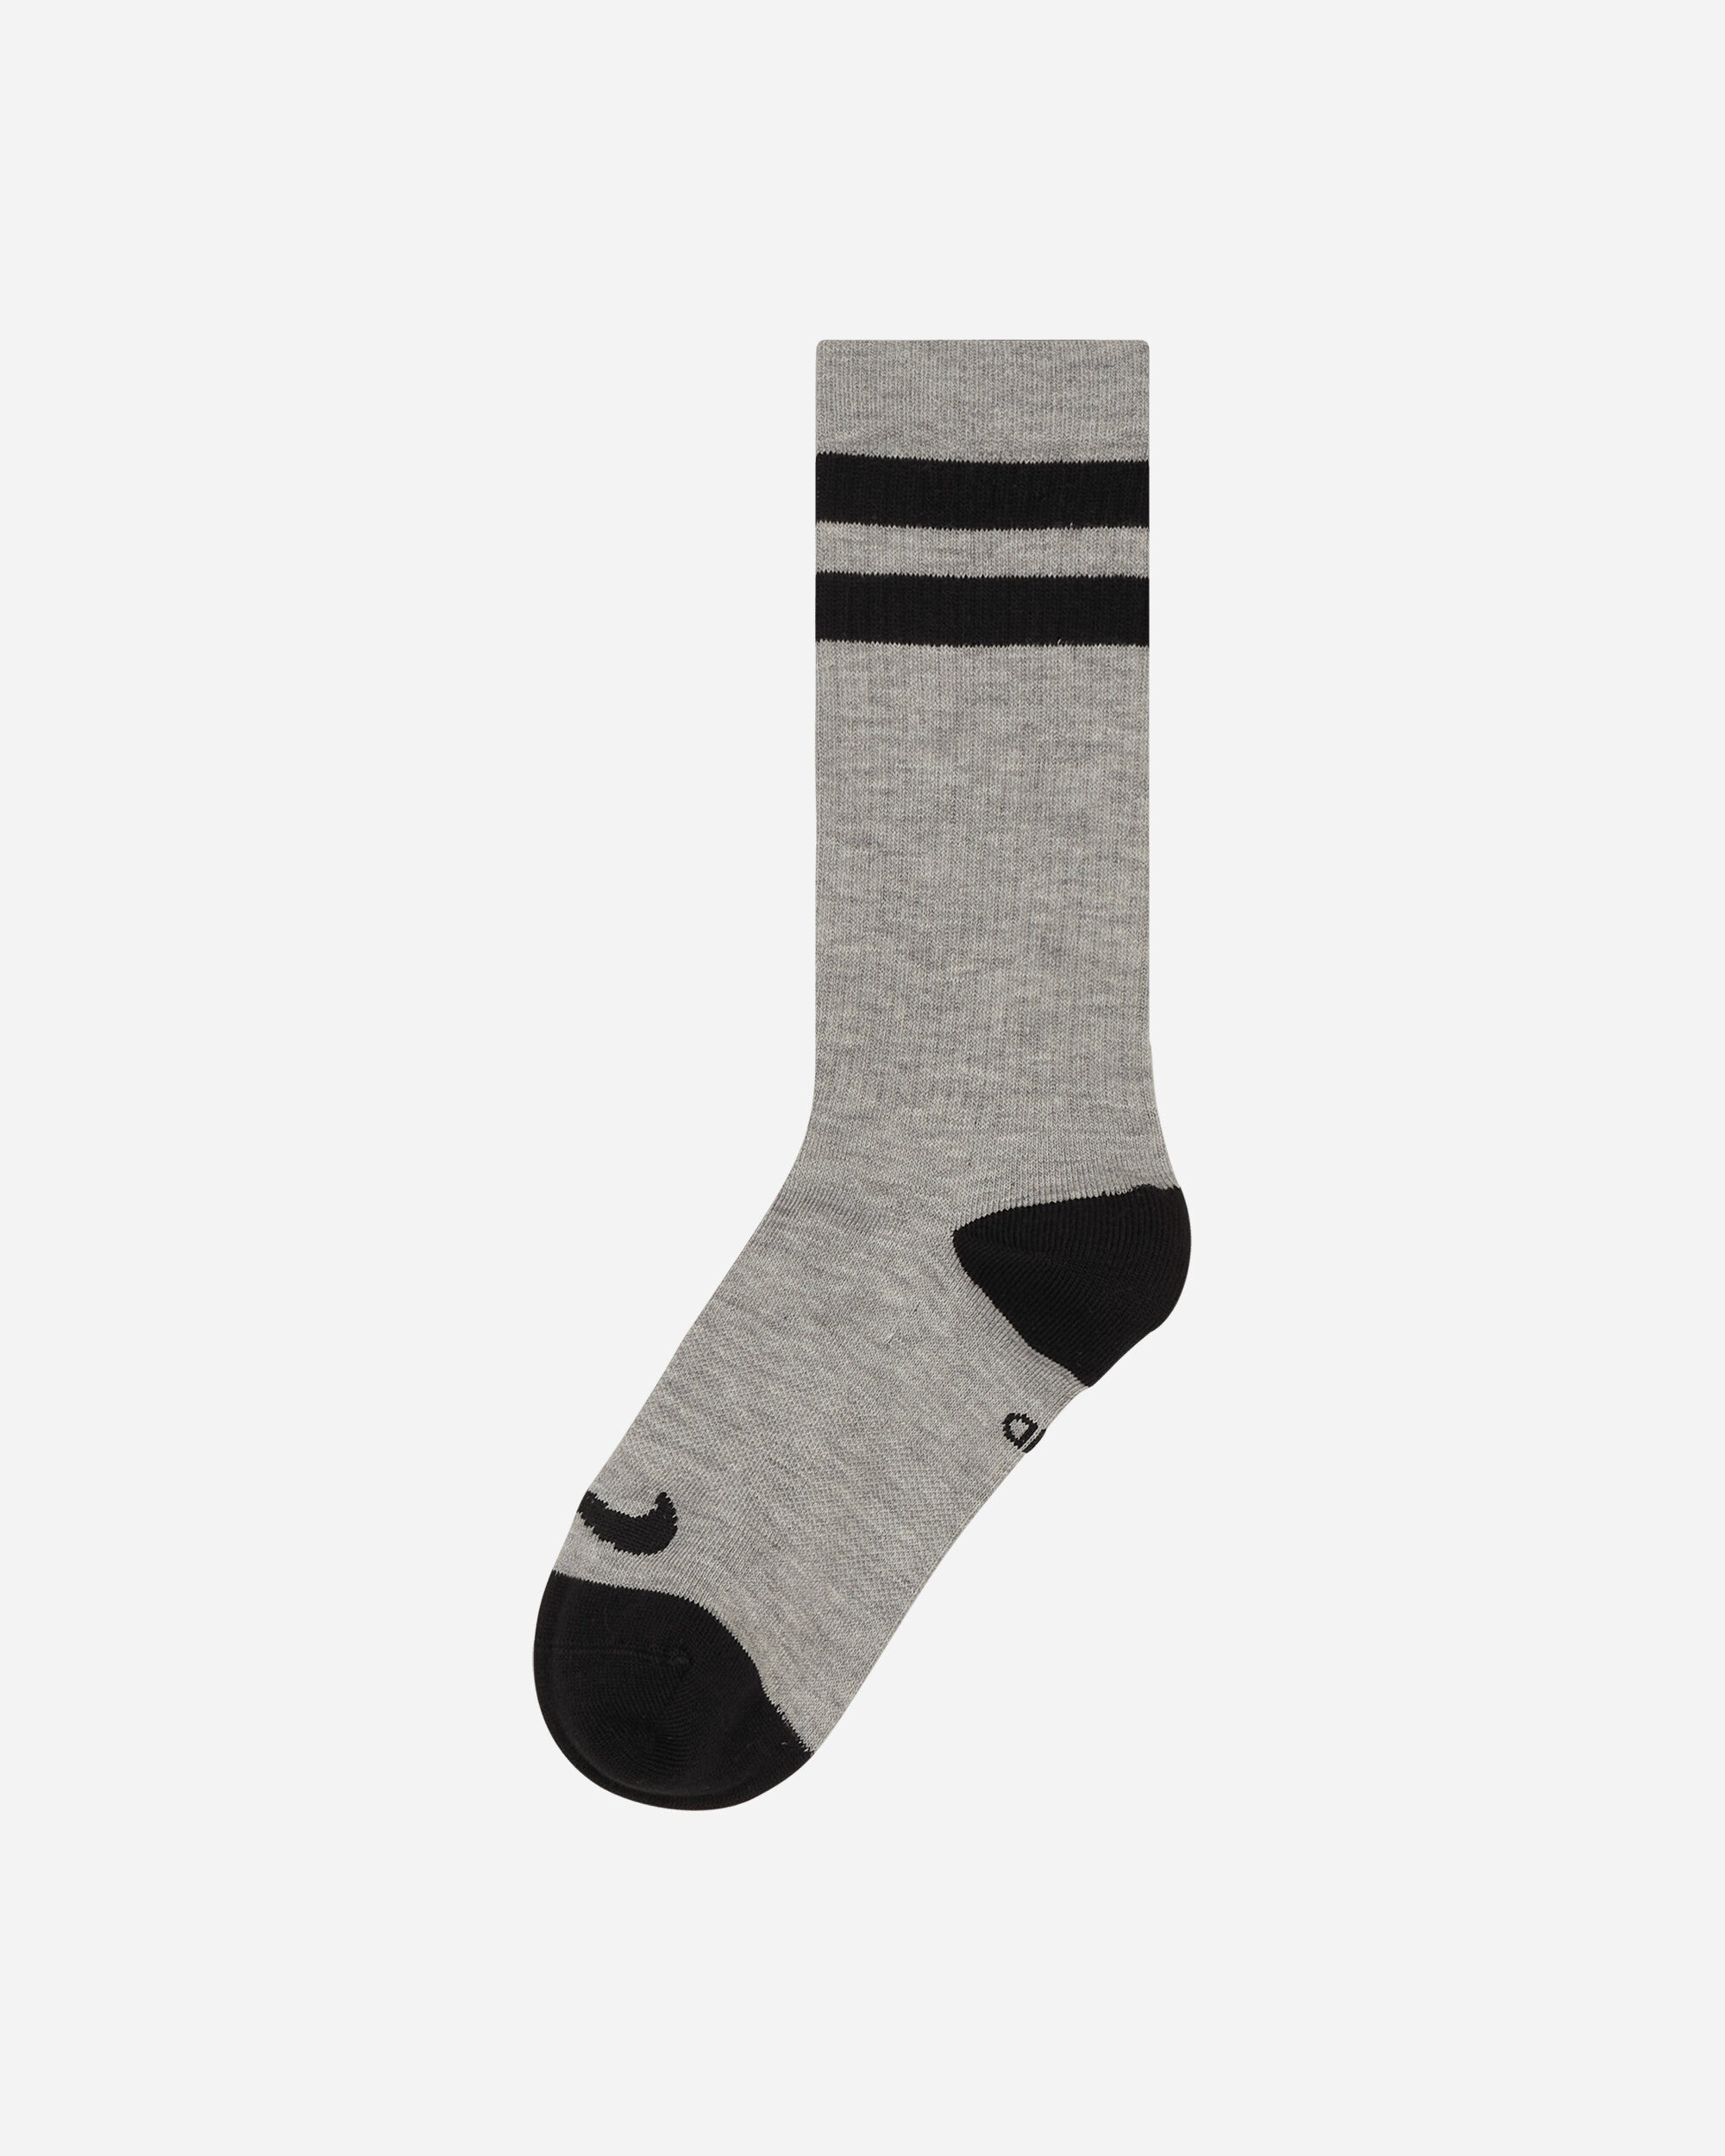 Everyday Essentials Crew Socks Multicolor Grey / Black - 5